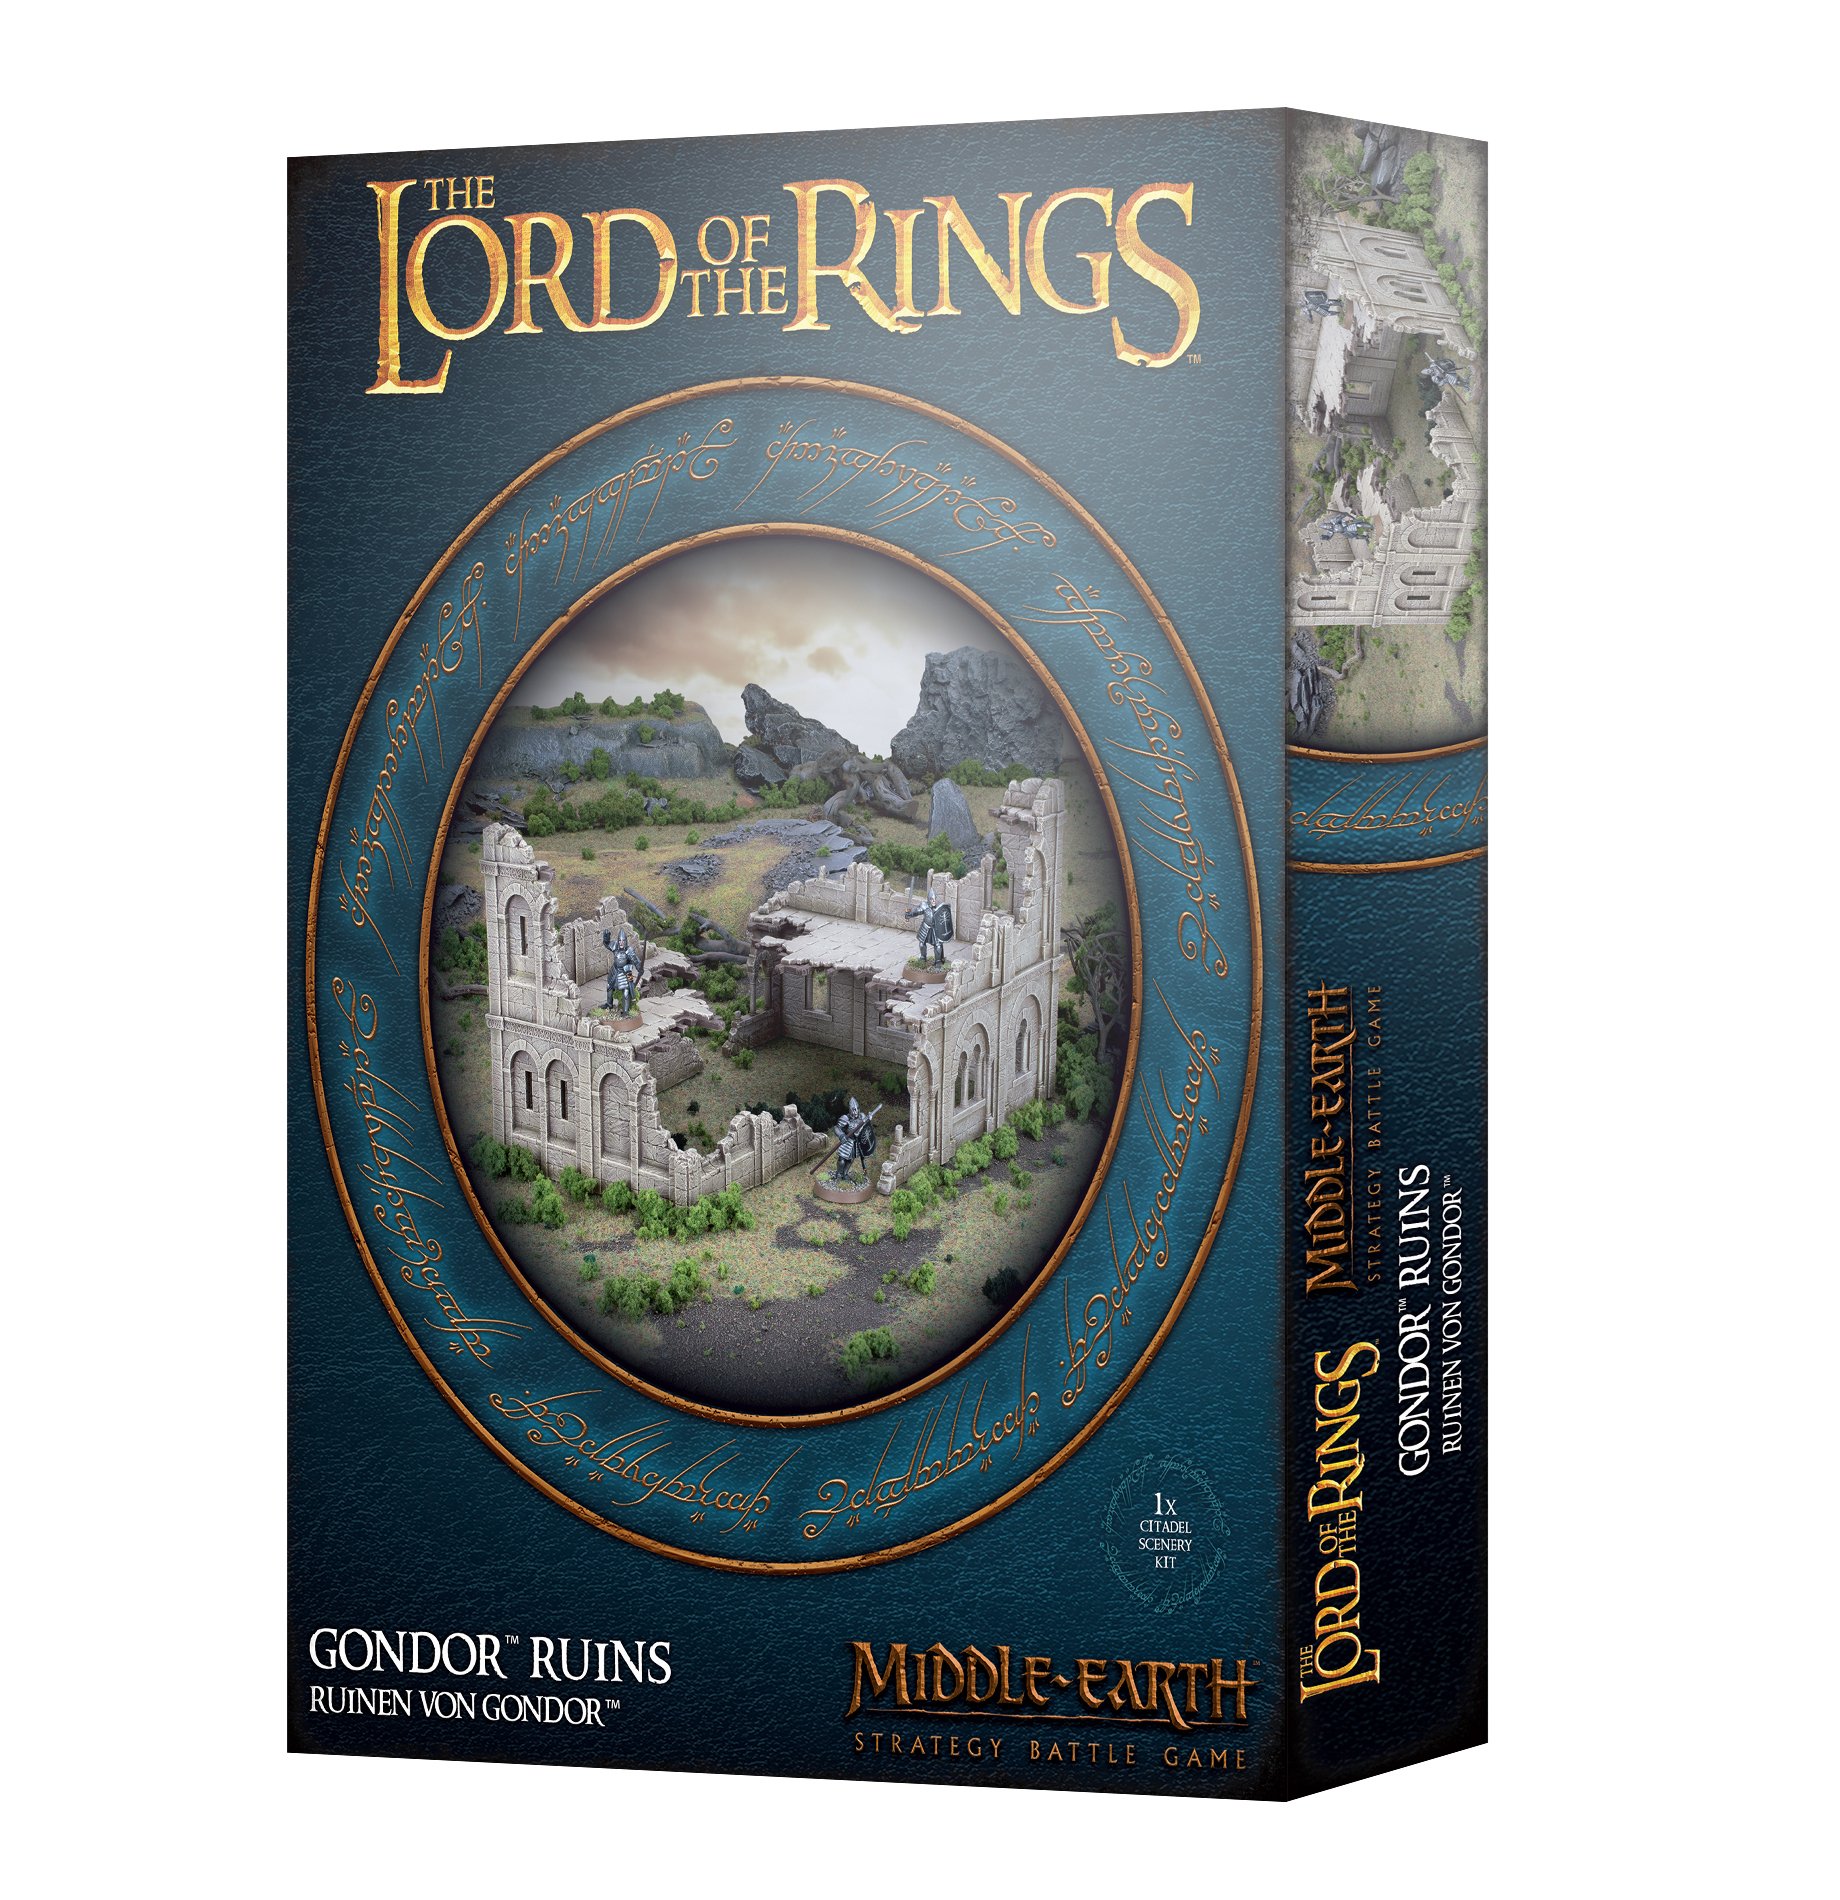 gondor ruins box